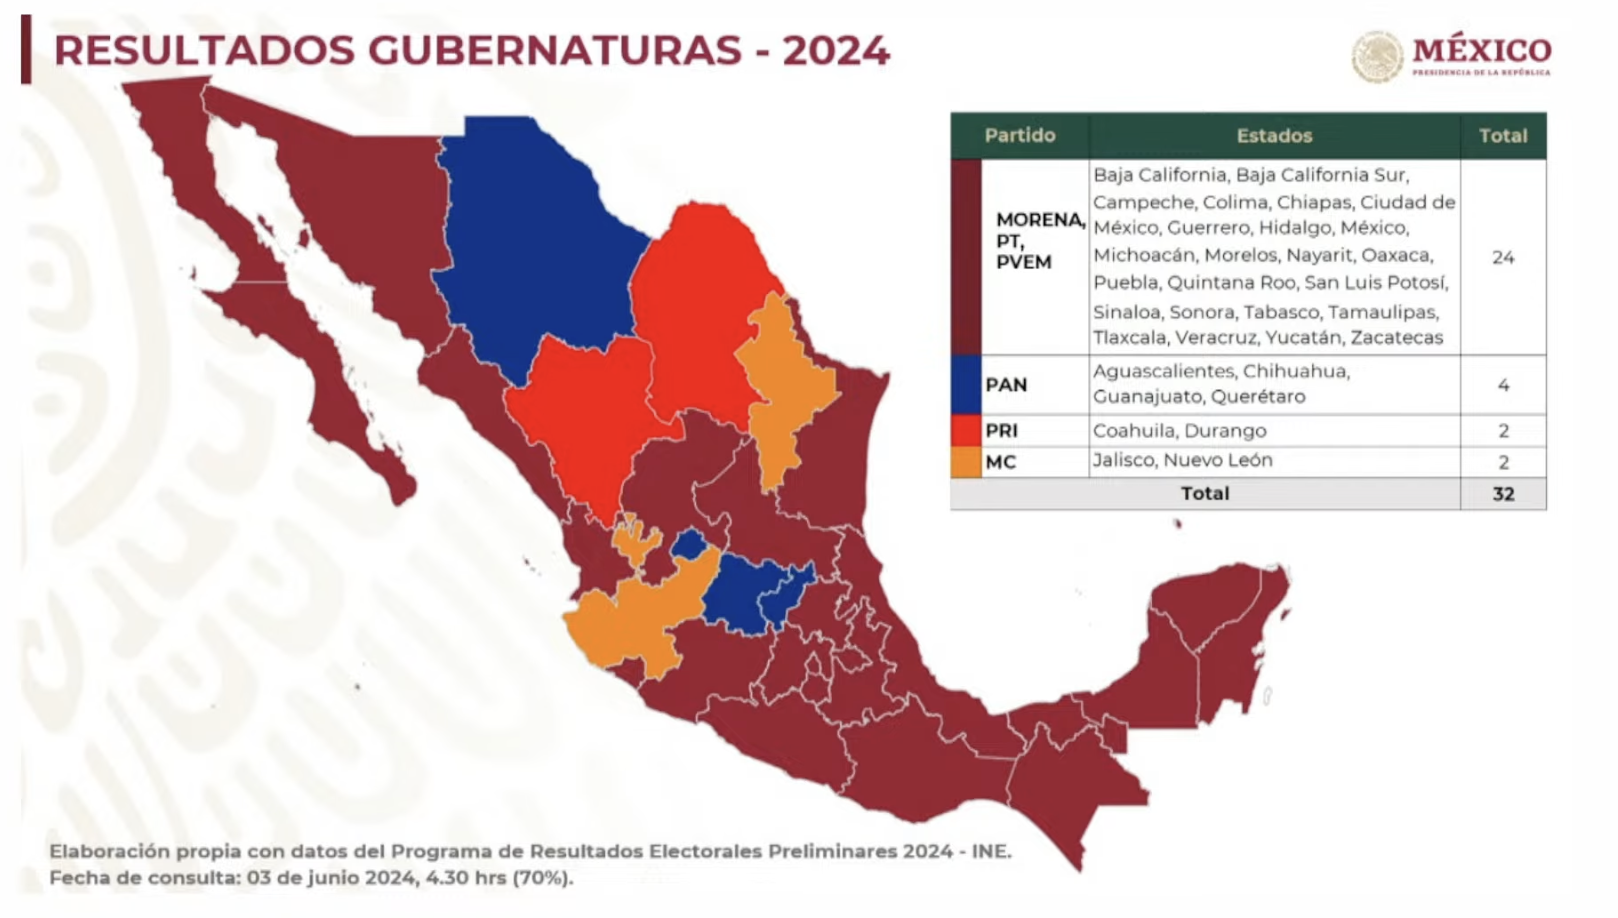 La proyección de las gubernaturas mexicanas, según los datos del PREP.